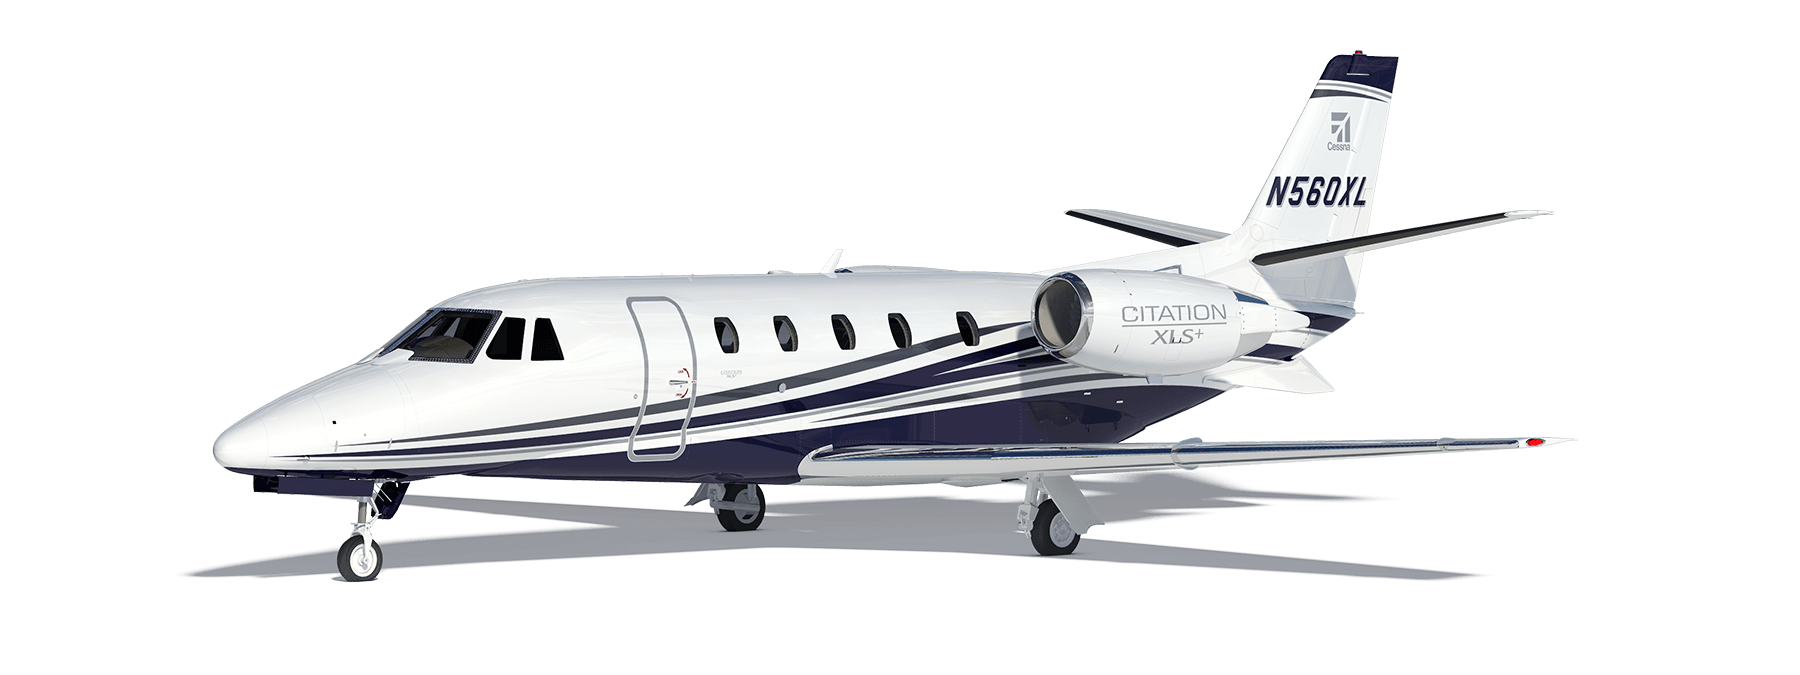 Charter a Midsize Jet like the Lear 55